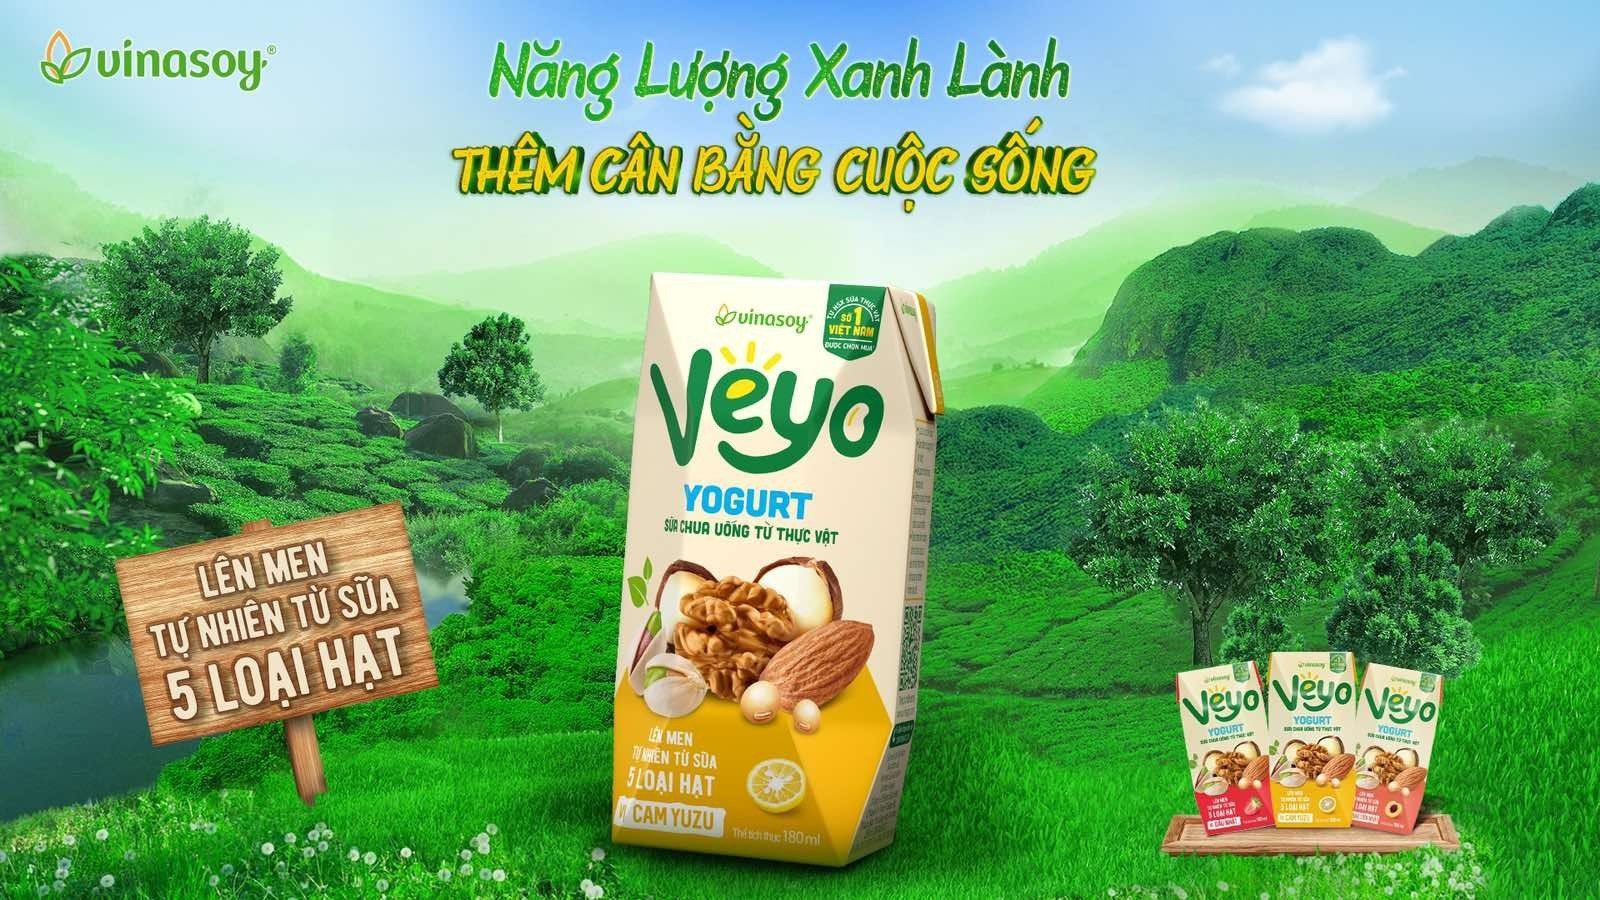 Người Việt đang thúc đẩy ngành dinh dưỡng thực vật dịch chuyển mạnh mẽ - 2